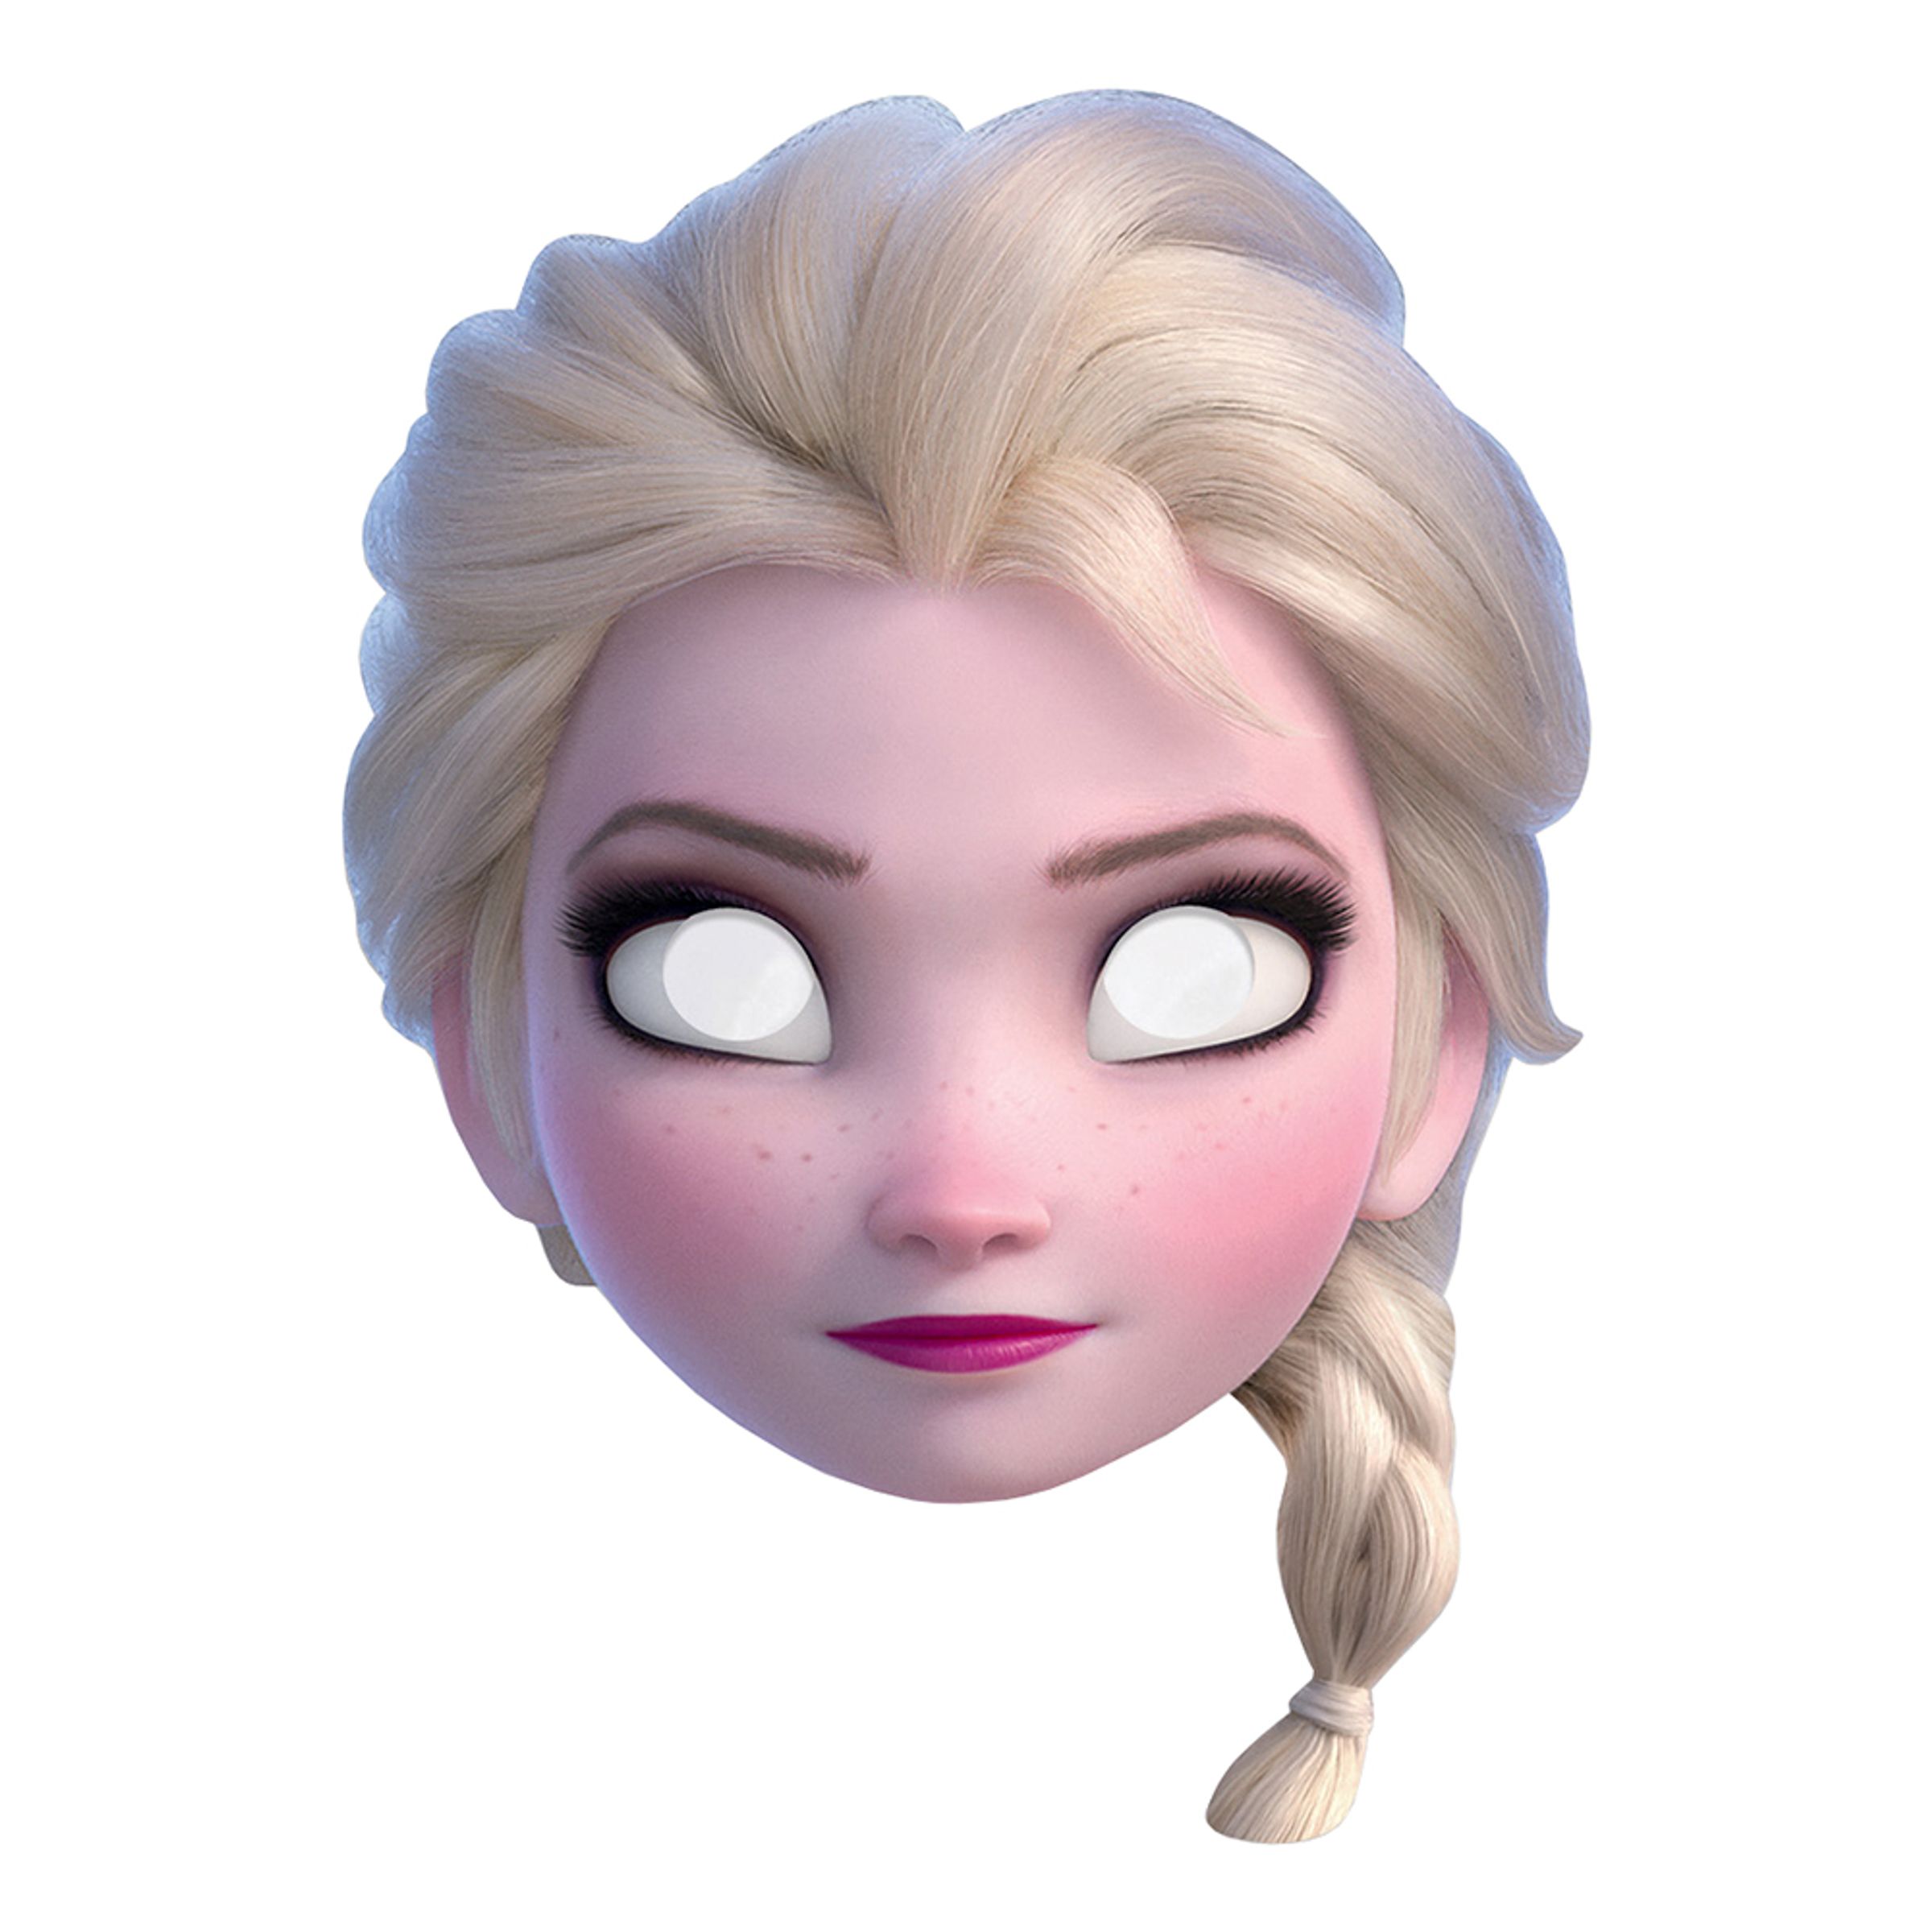 Frozen 2 Elsa Pappmask - One size